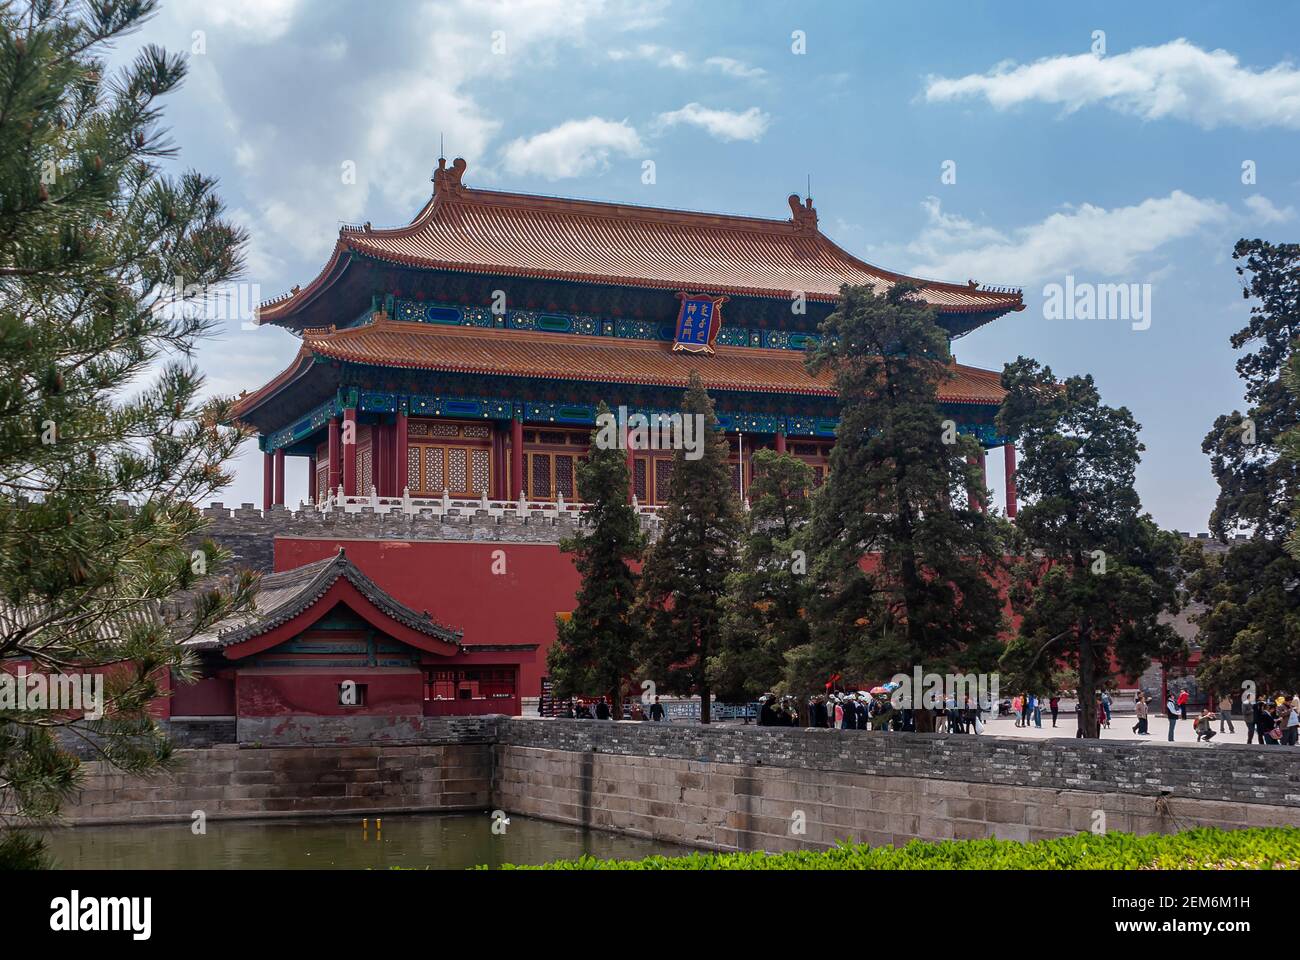 Beijing, Chine - 27 avril 2010 : porte rouge de la construction divine sans issue comme sortie de la Cité interdite côté nord sous bleu ciel nuageux. Douves et arbres verts. Banque D'Images